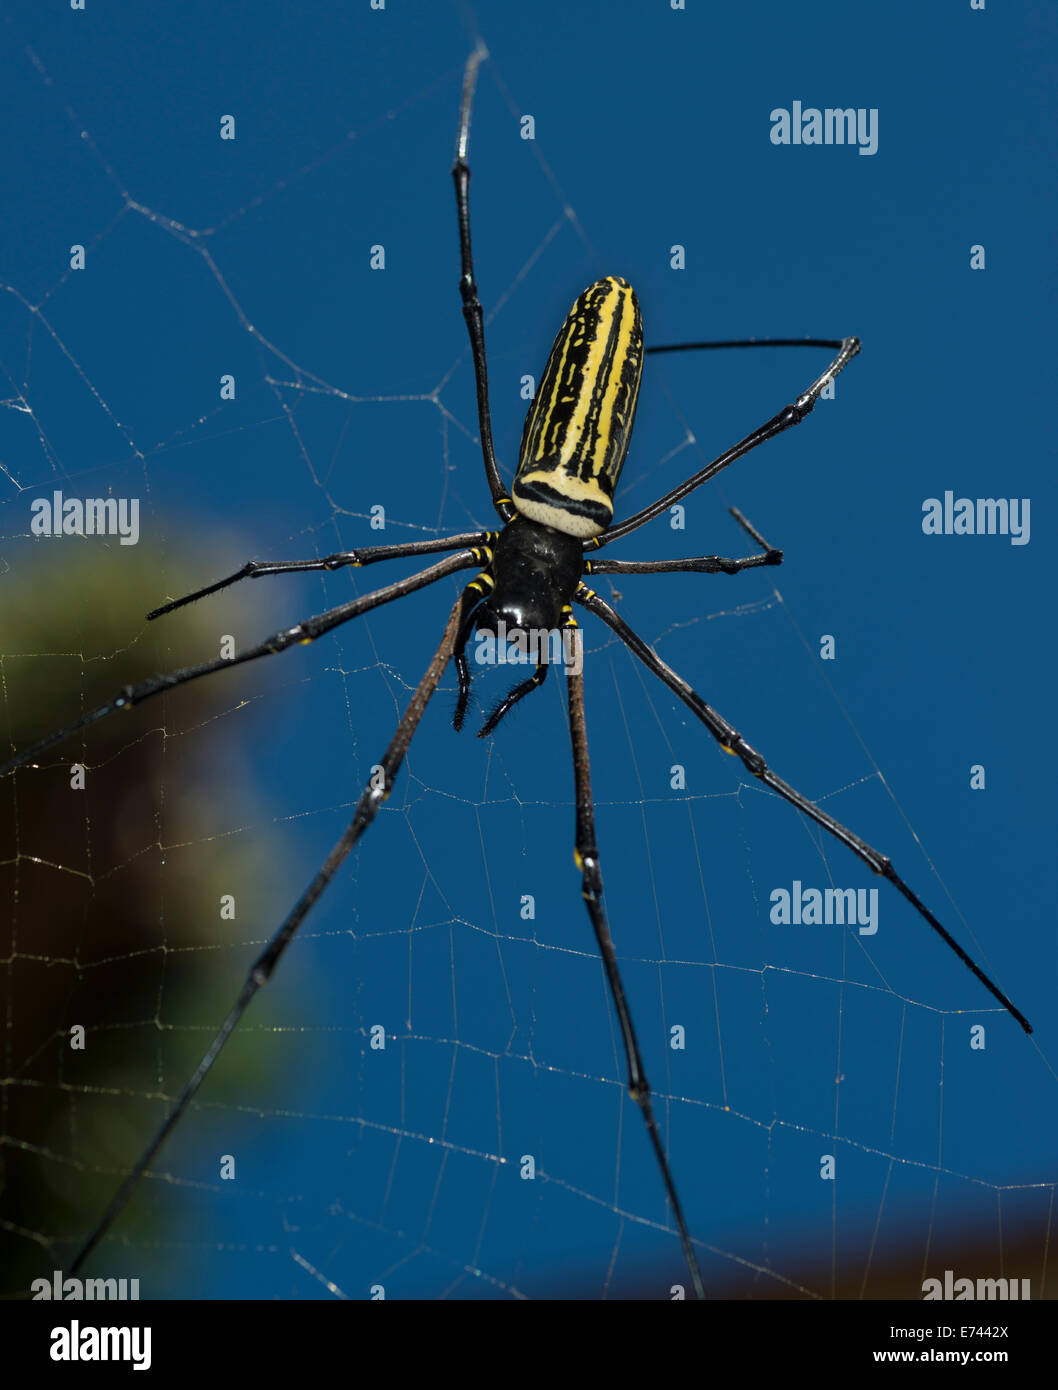 Riesen Holz Spinne im Netz Stockfotografie - Alamy